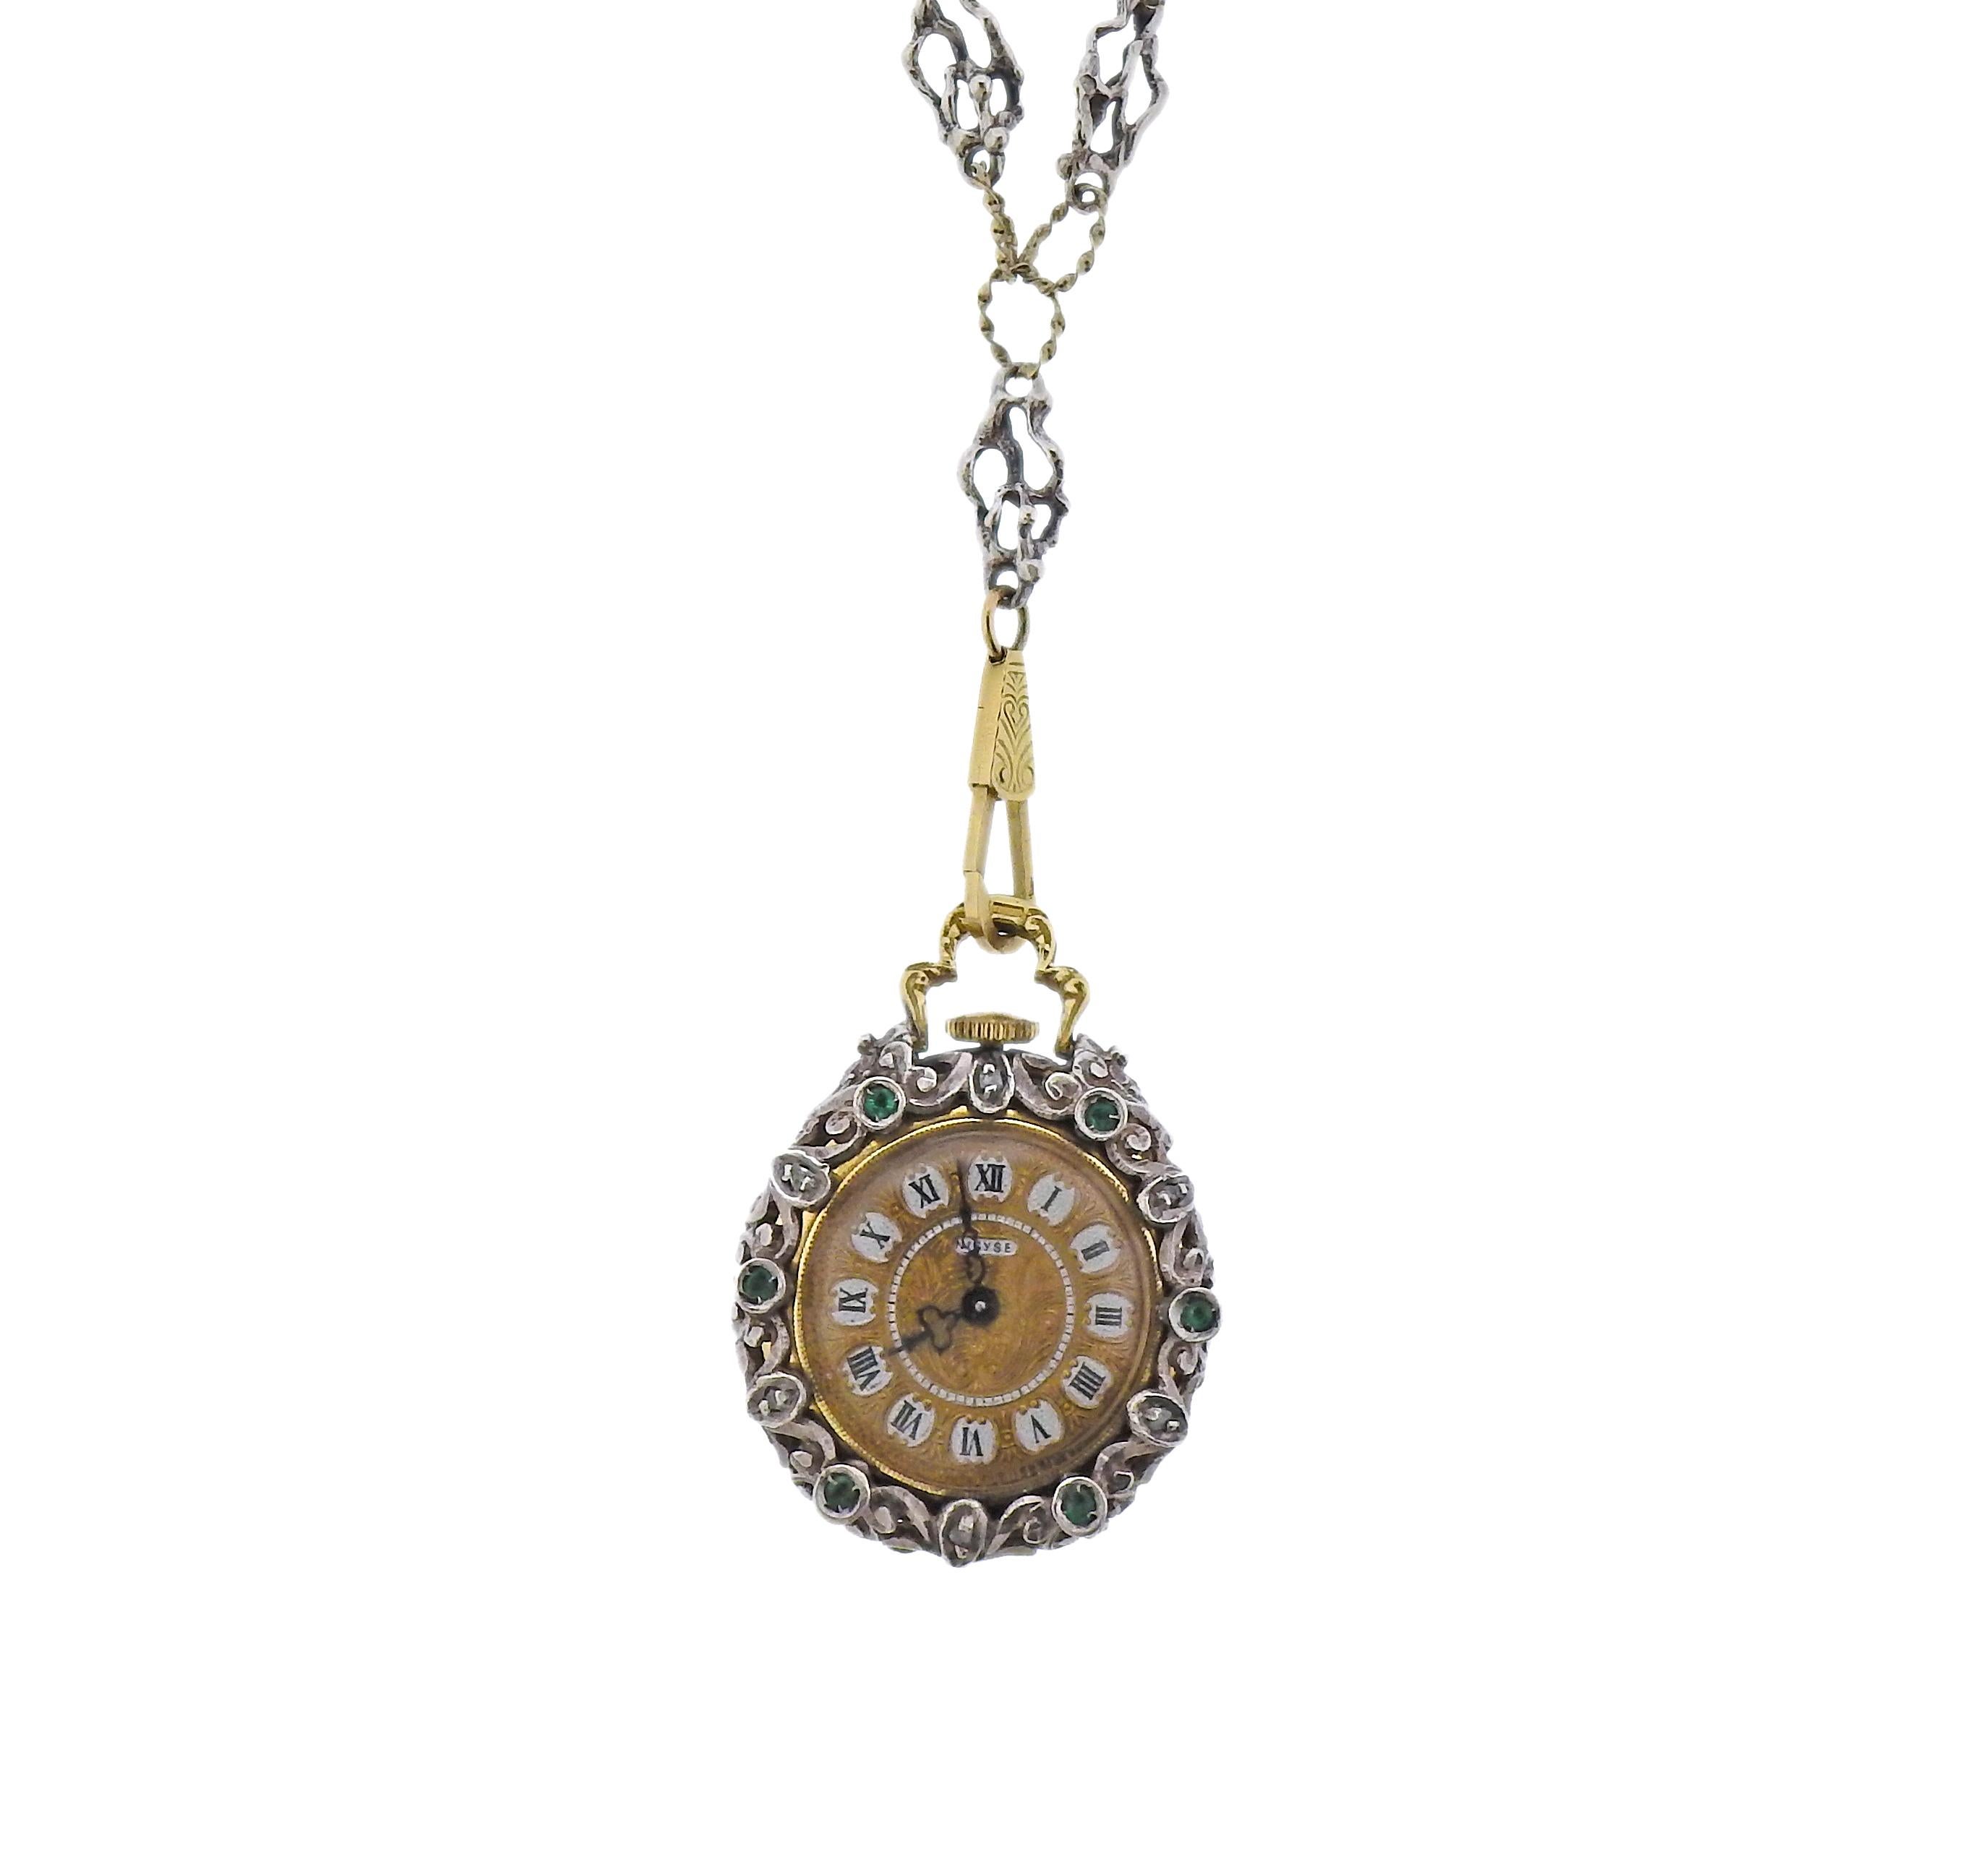 Chaîne ancienne en argent et or 14k avec pendentif en forme de cage, contenant une montre de poche à l'intérieur. Décorée de diamants taillés en rose, d'émail et de  pierres précieuses vertes. Le pendentif mesure 29 mm de diamètre. La chaîne fait